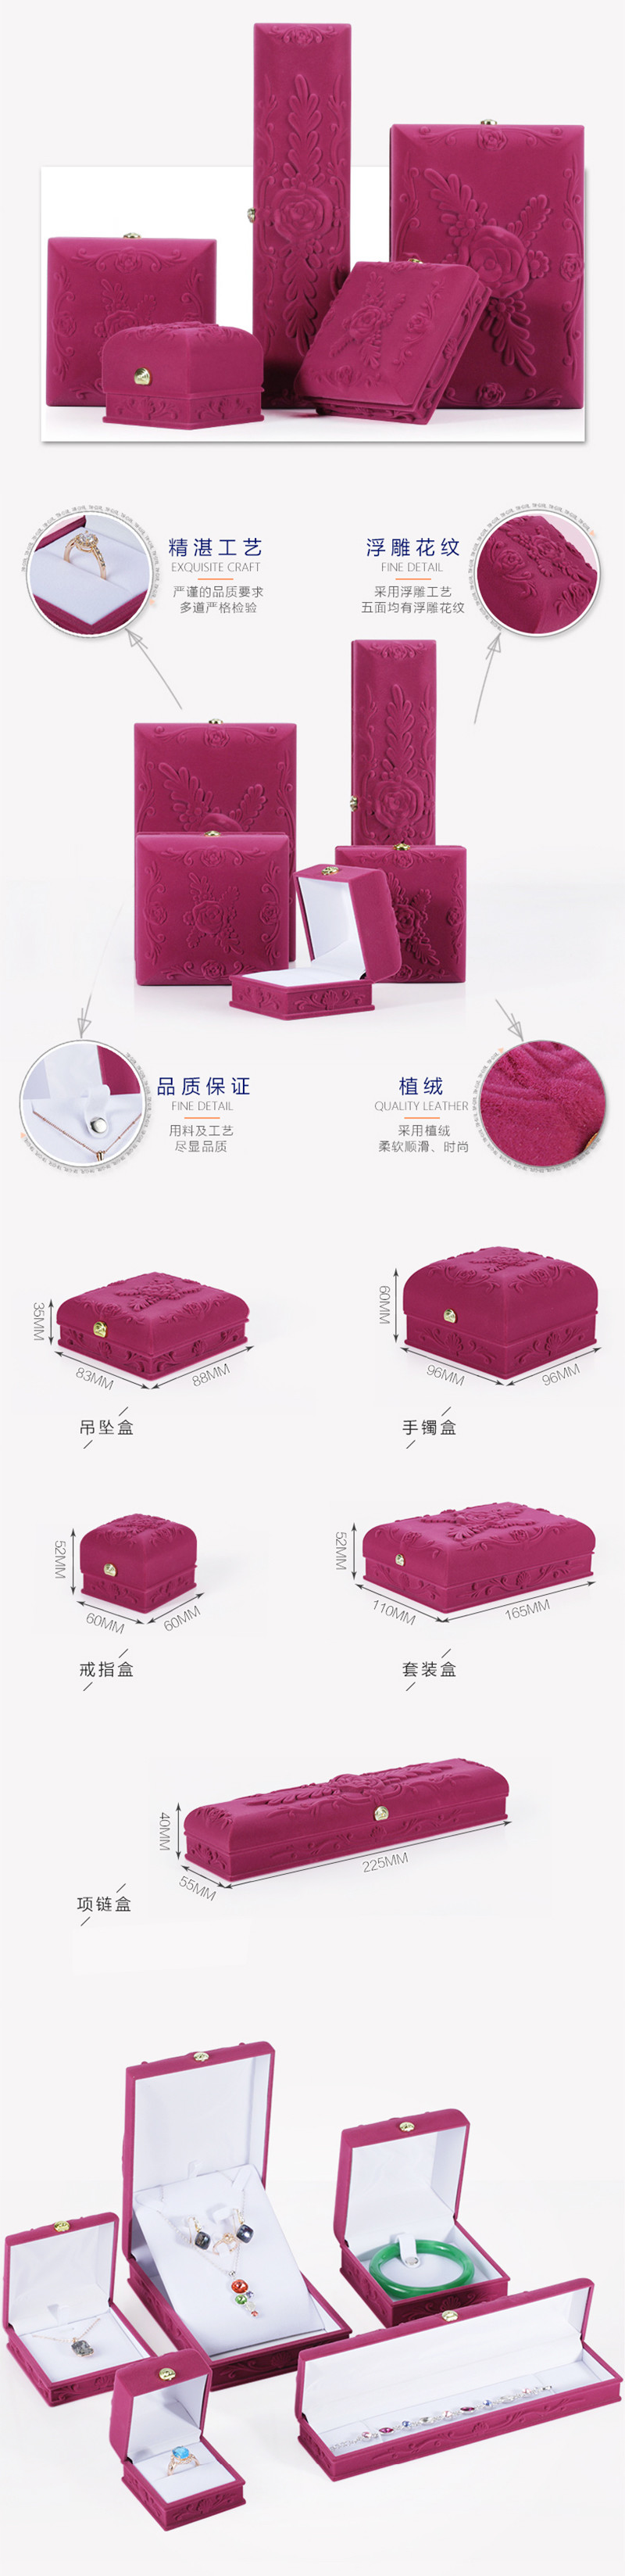 紫色浮雕饰品礼盒首饰盒包装定制